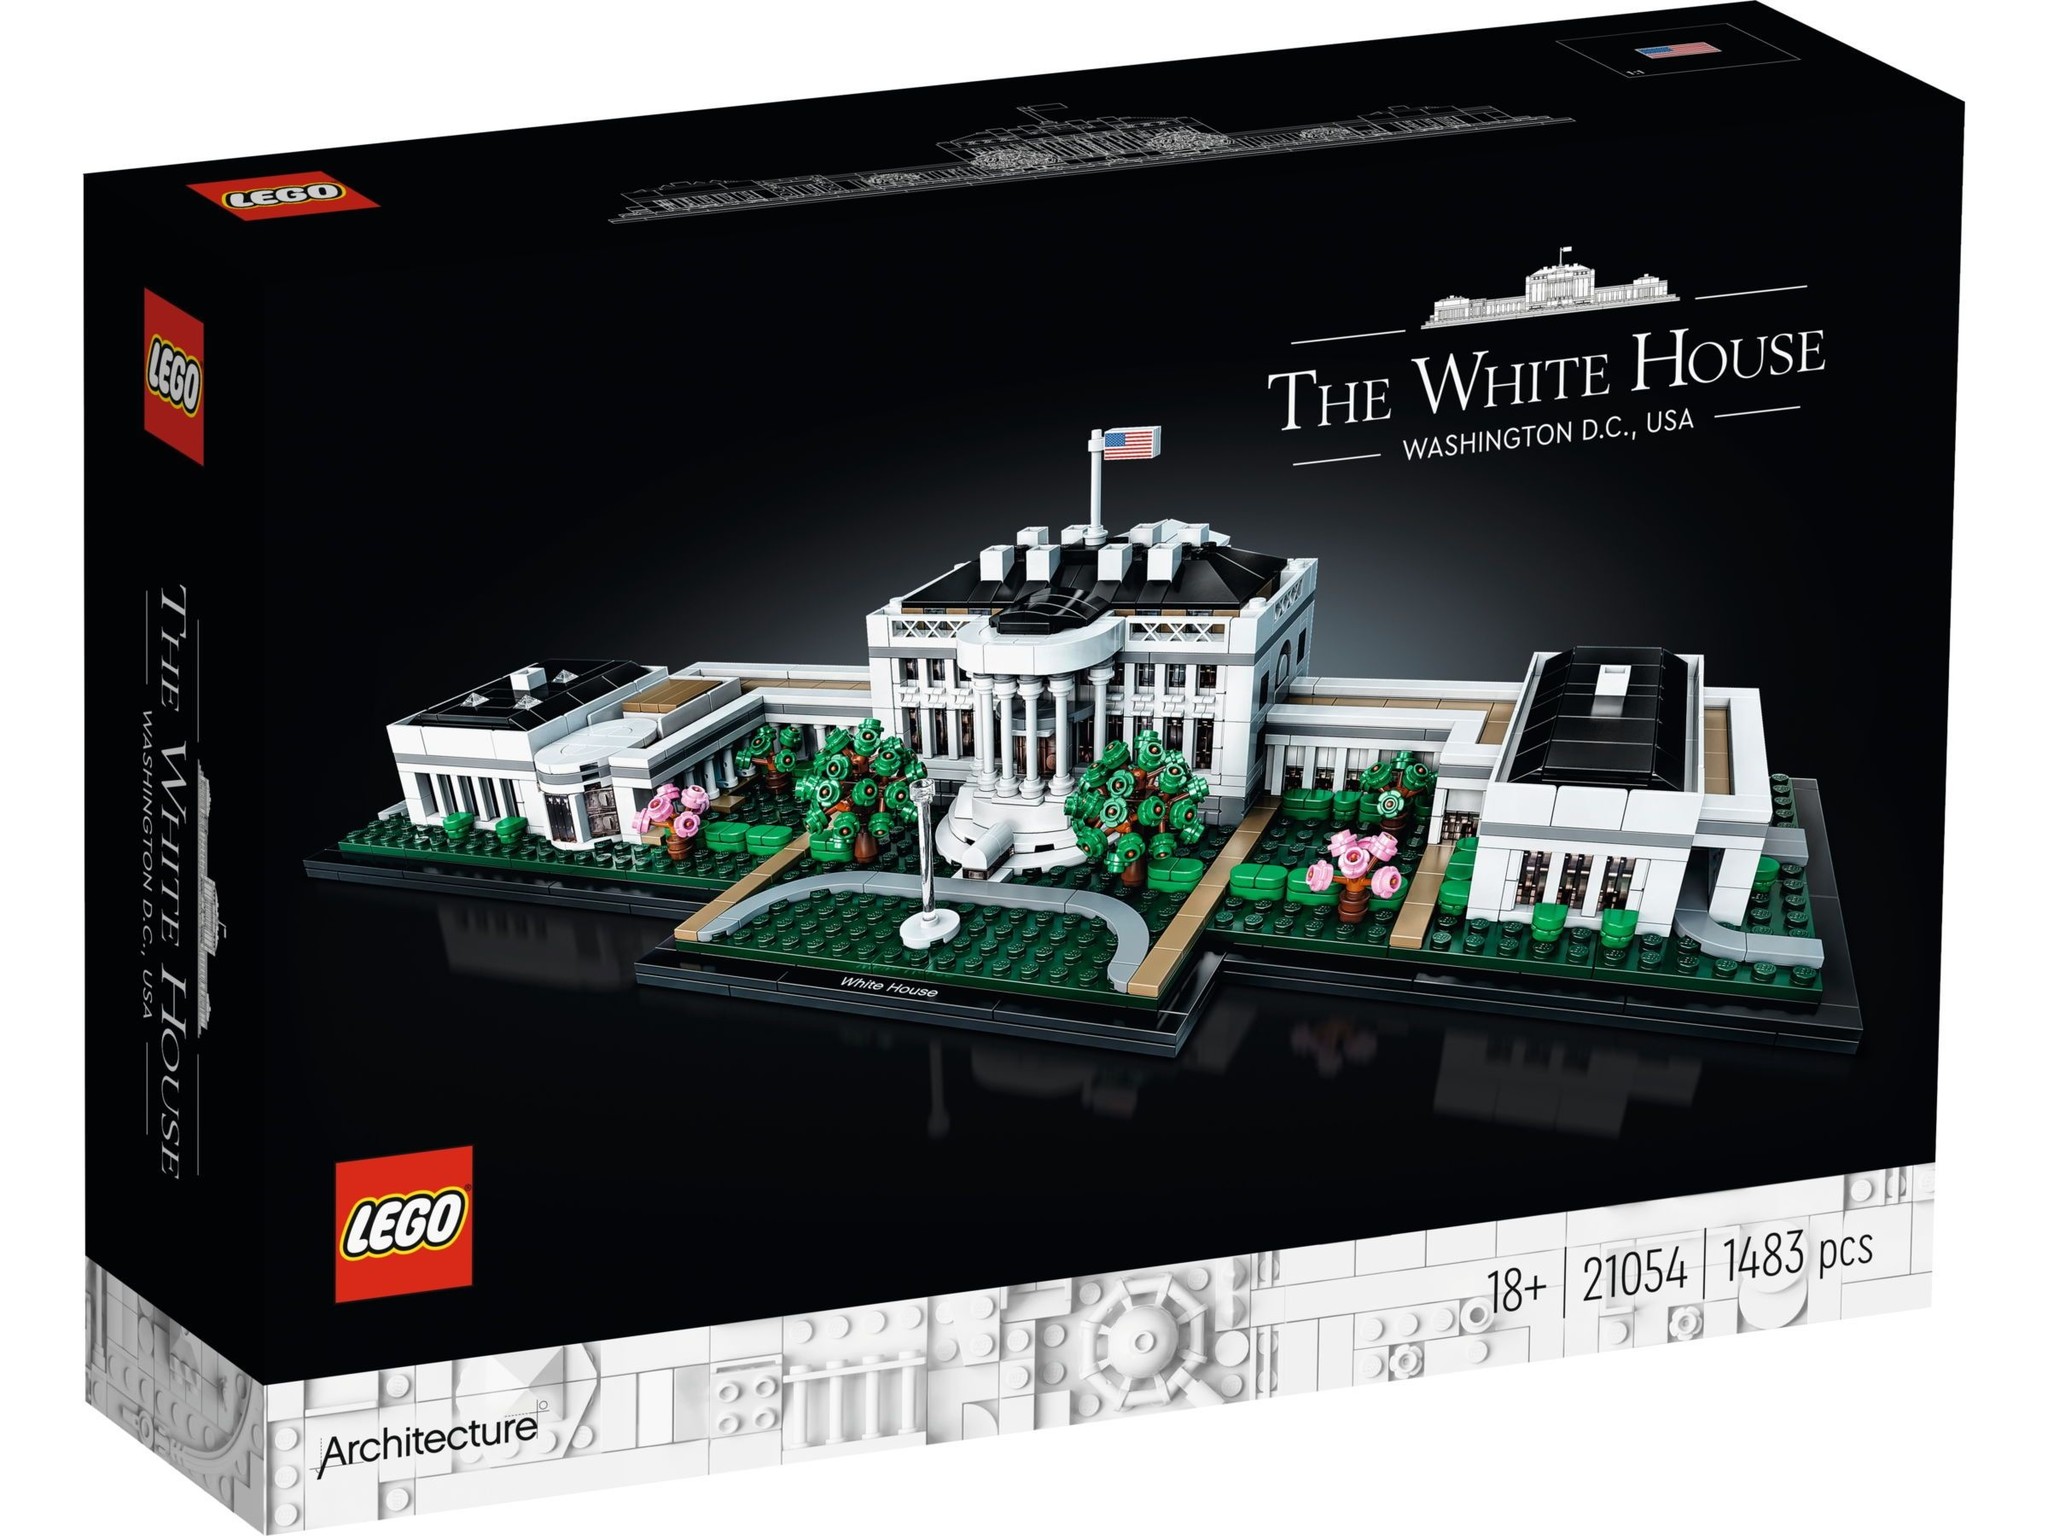 Nietje boezem plek LEGO 21054 Het Witte Huis huren? | Bricksverhuur